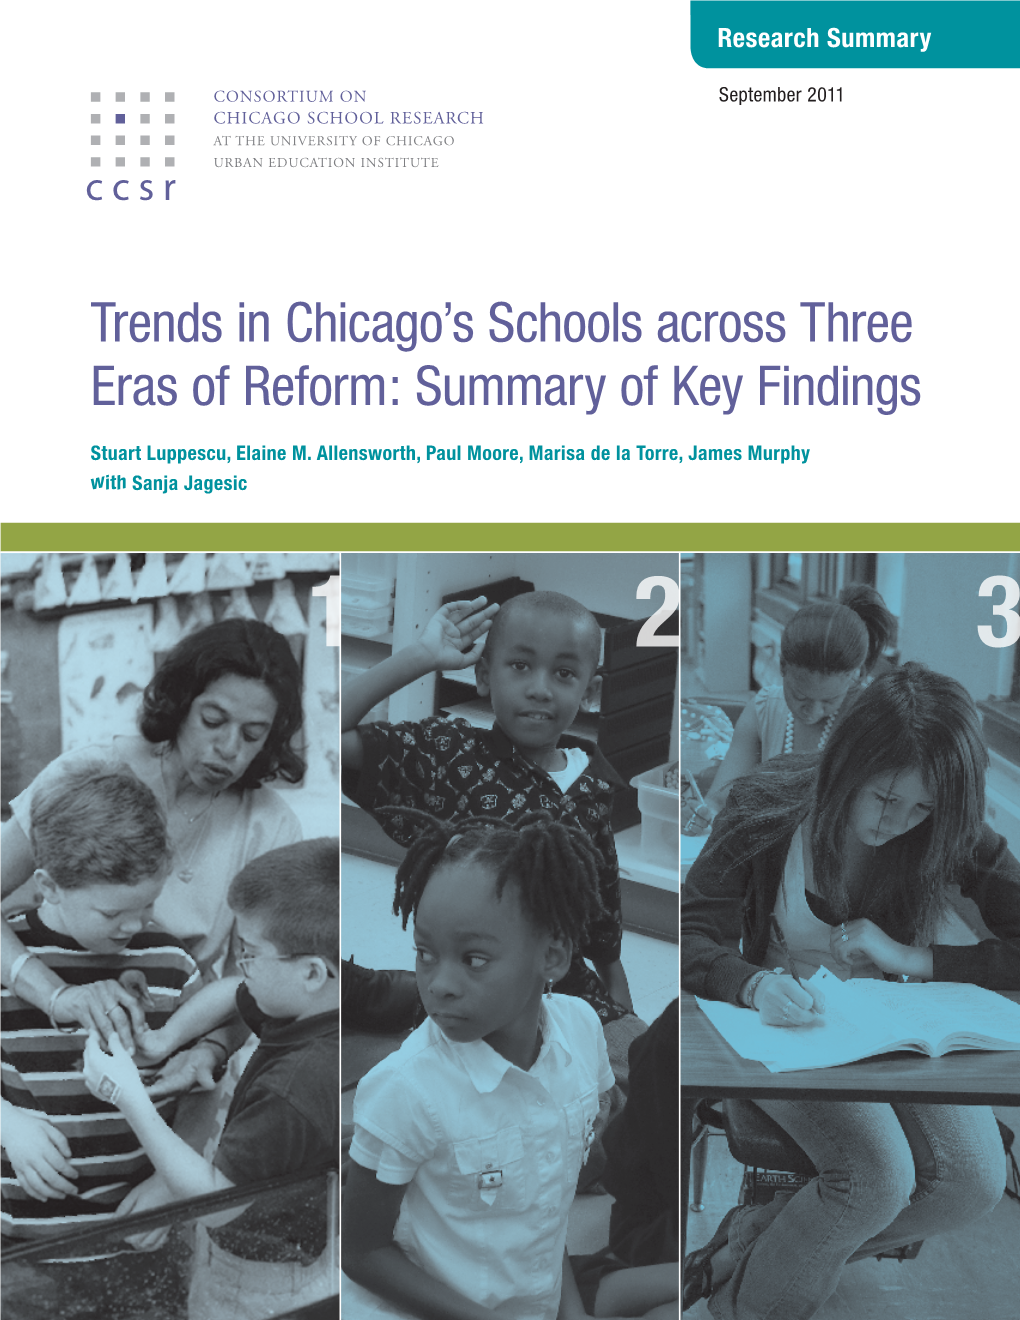 Trends in Chicago's Schools Across Three Eras of Reform